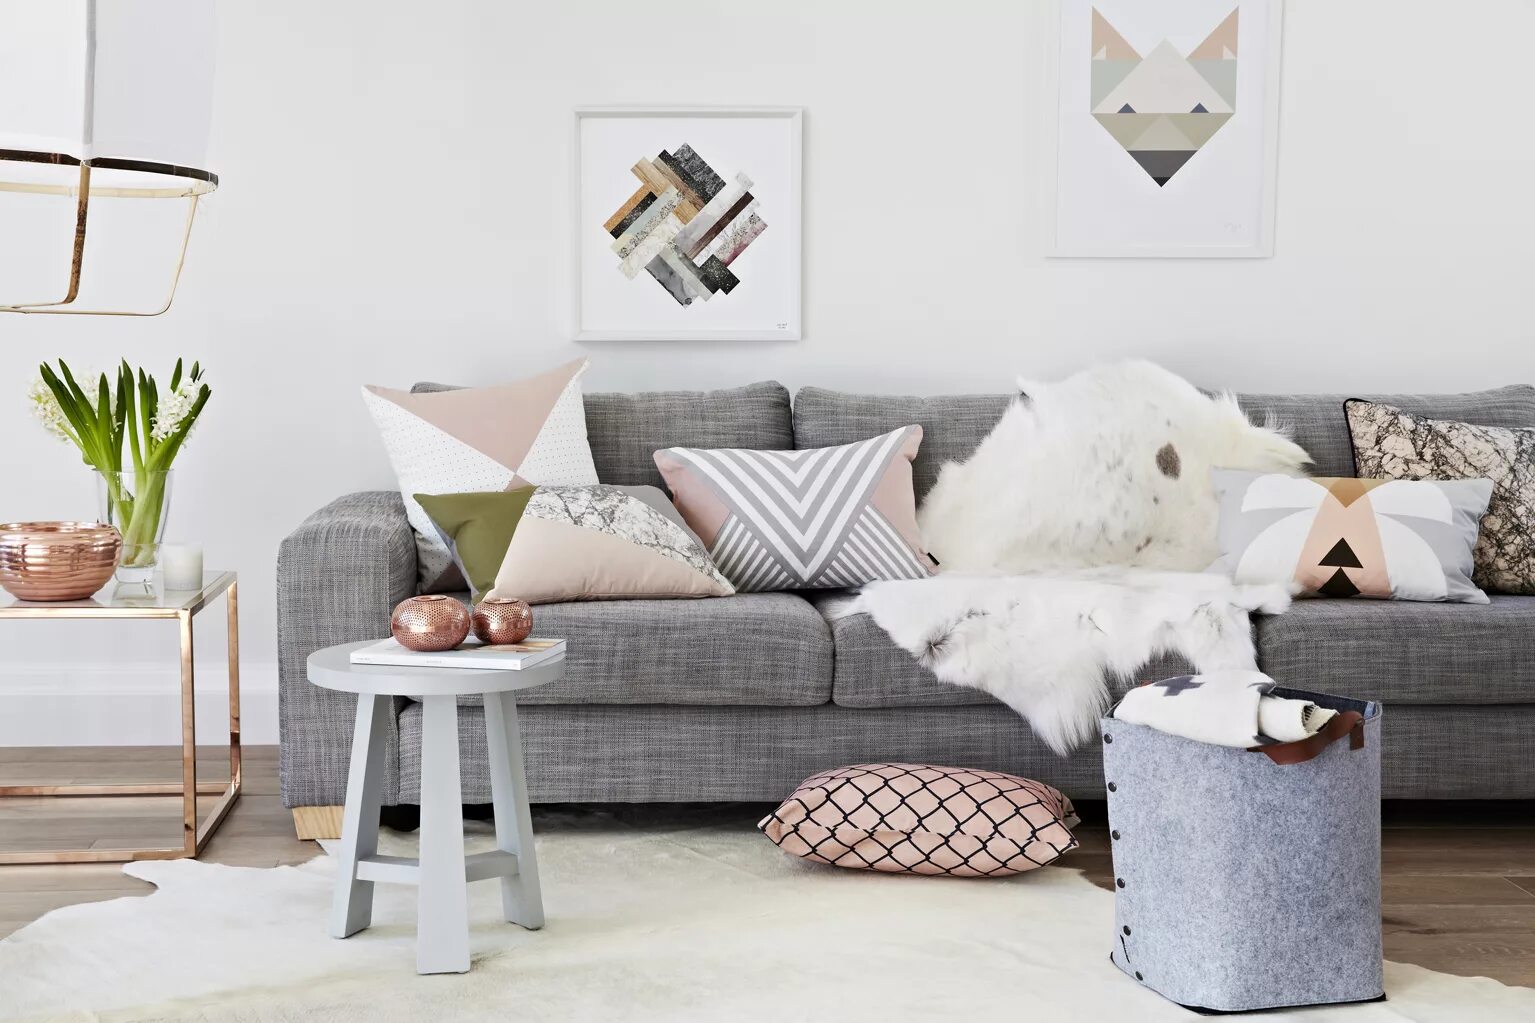 Серый диван и подушки в стиле Сканди. Софа в стиле Сканди. Текстиль в стиле Сканди. Скандинавский стиль в интерьере.